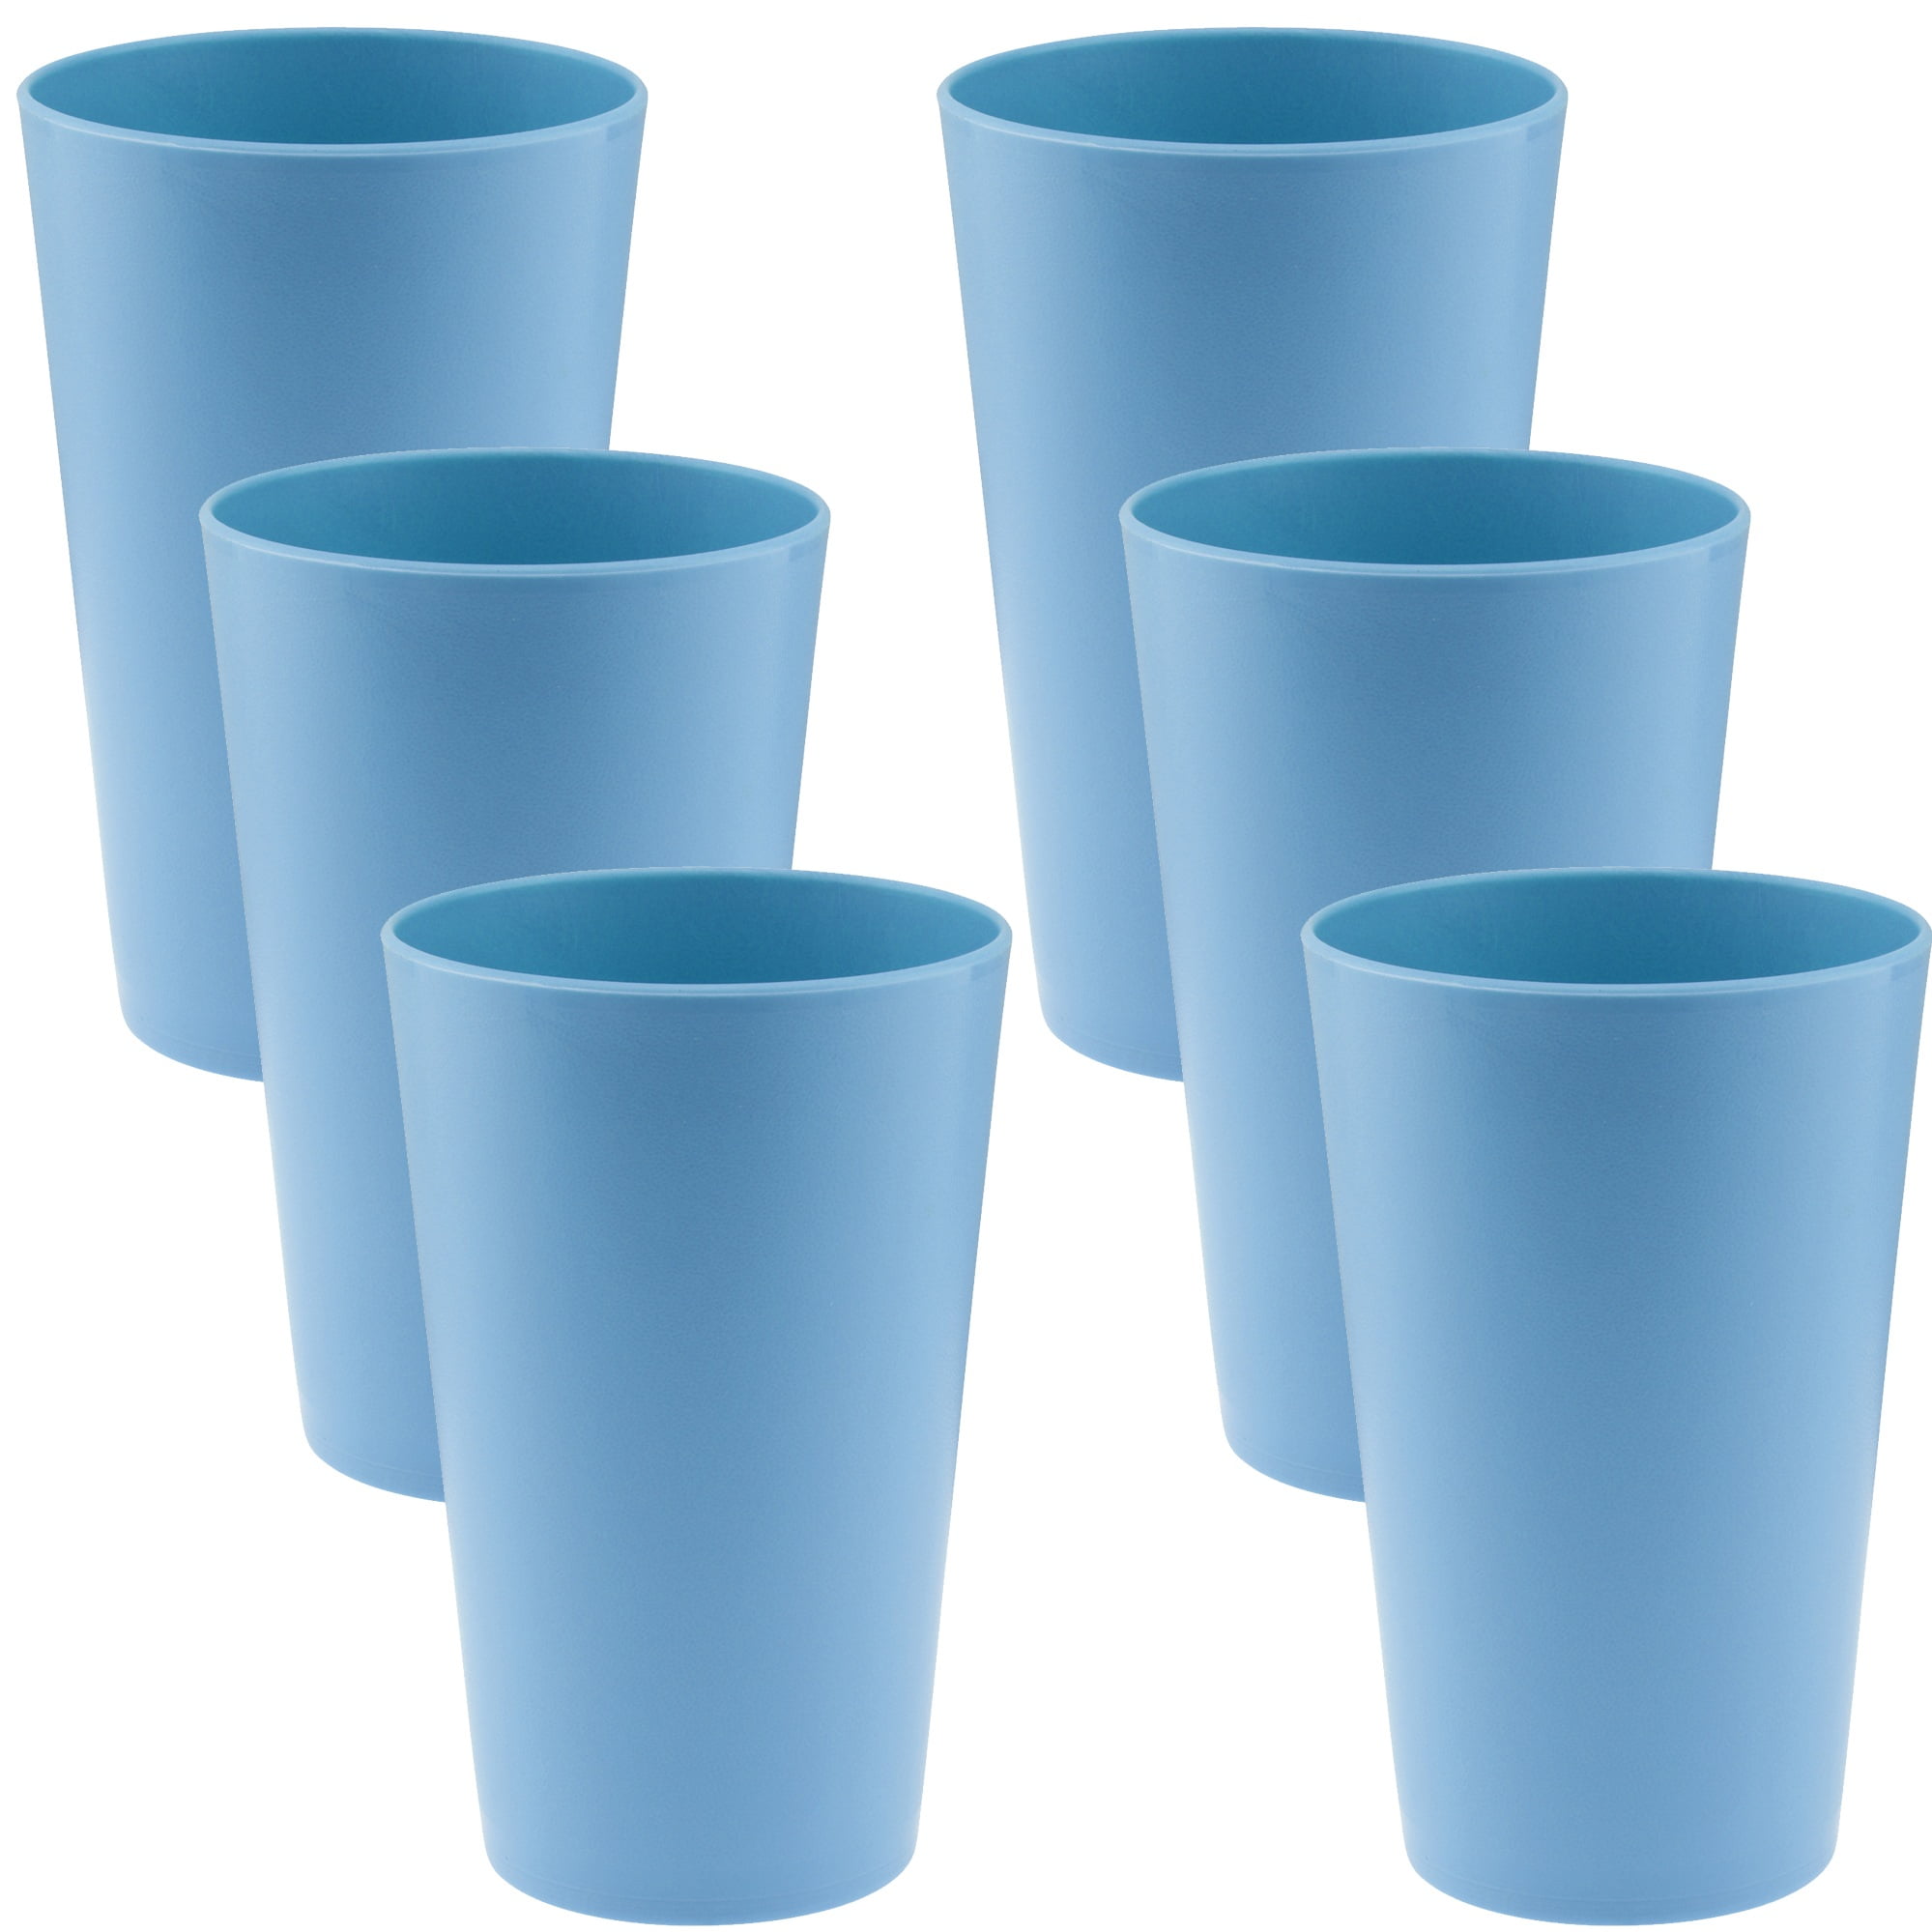 Om te mediteren Winkelier De eigenaar YBM Home Reusable Plastic Cups 10 oz, Unbreakable Drinkware Dishwasher Safe  6-Pack, Blue - Walmart.com